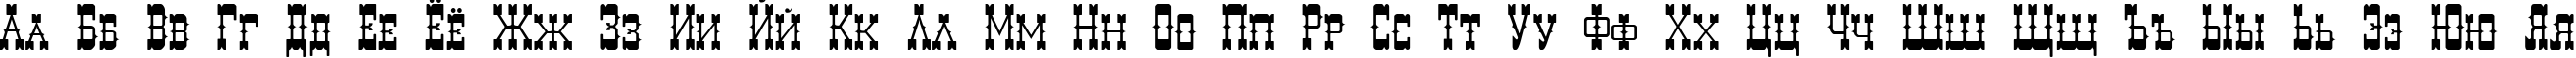 Пример написания русского алфавита шрифтом Decree Art Two